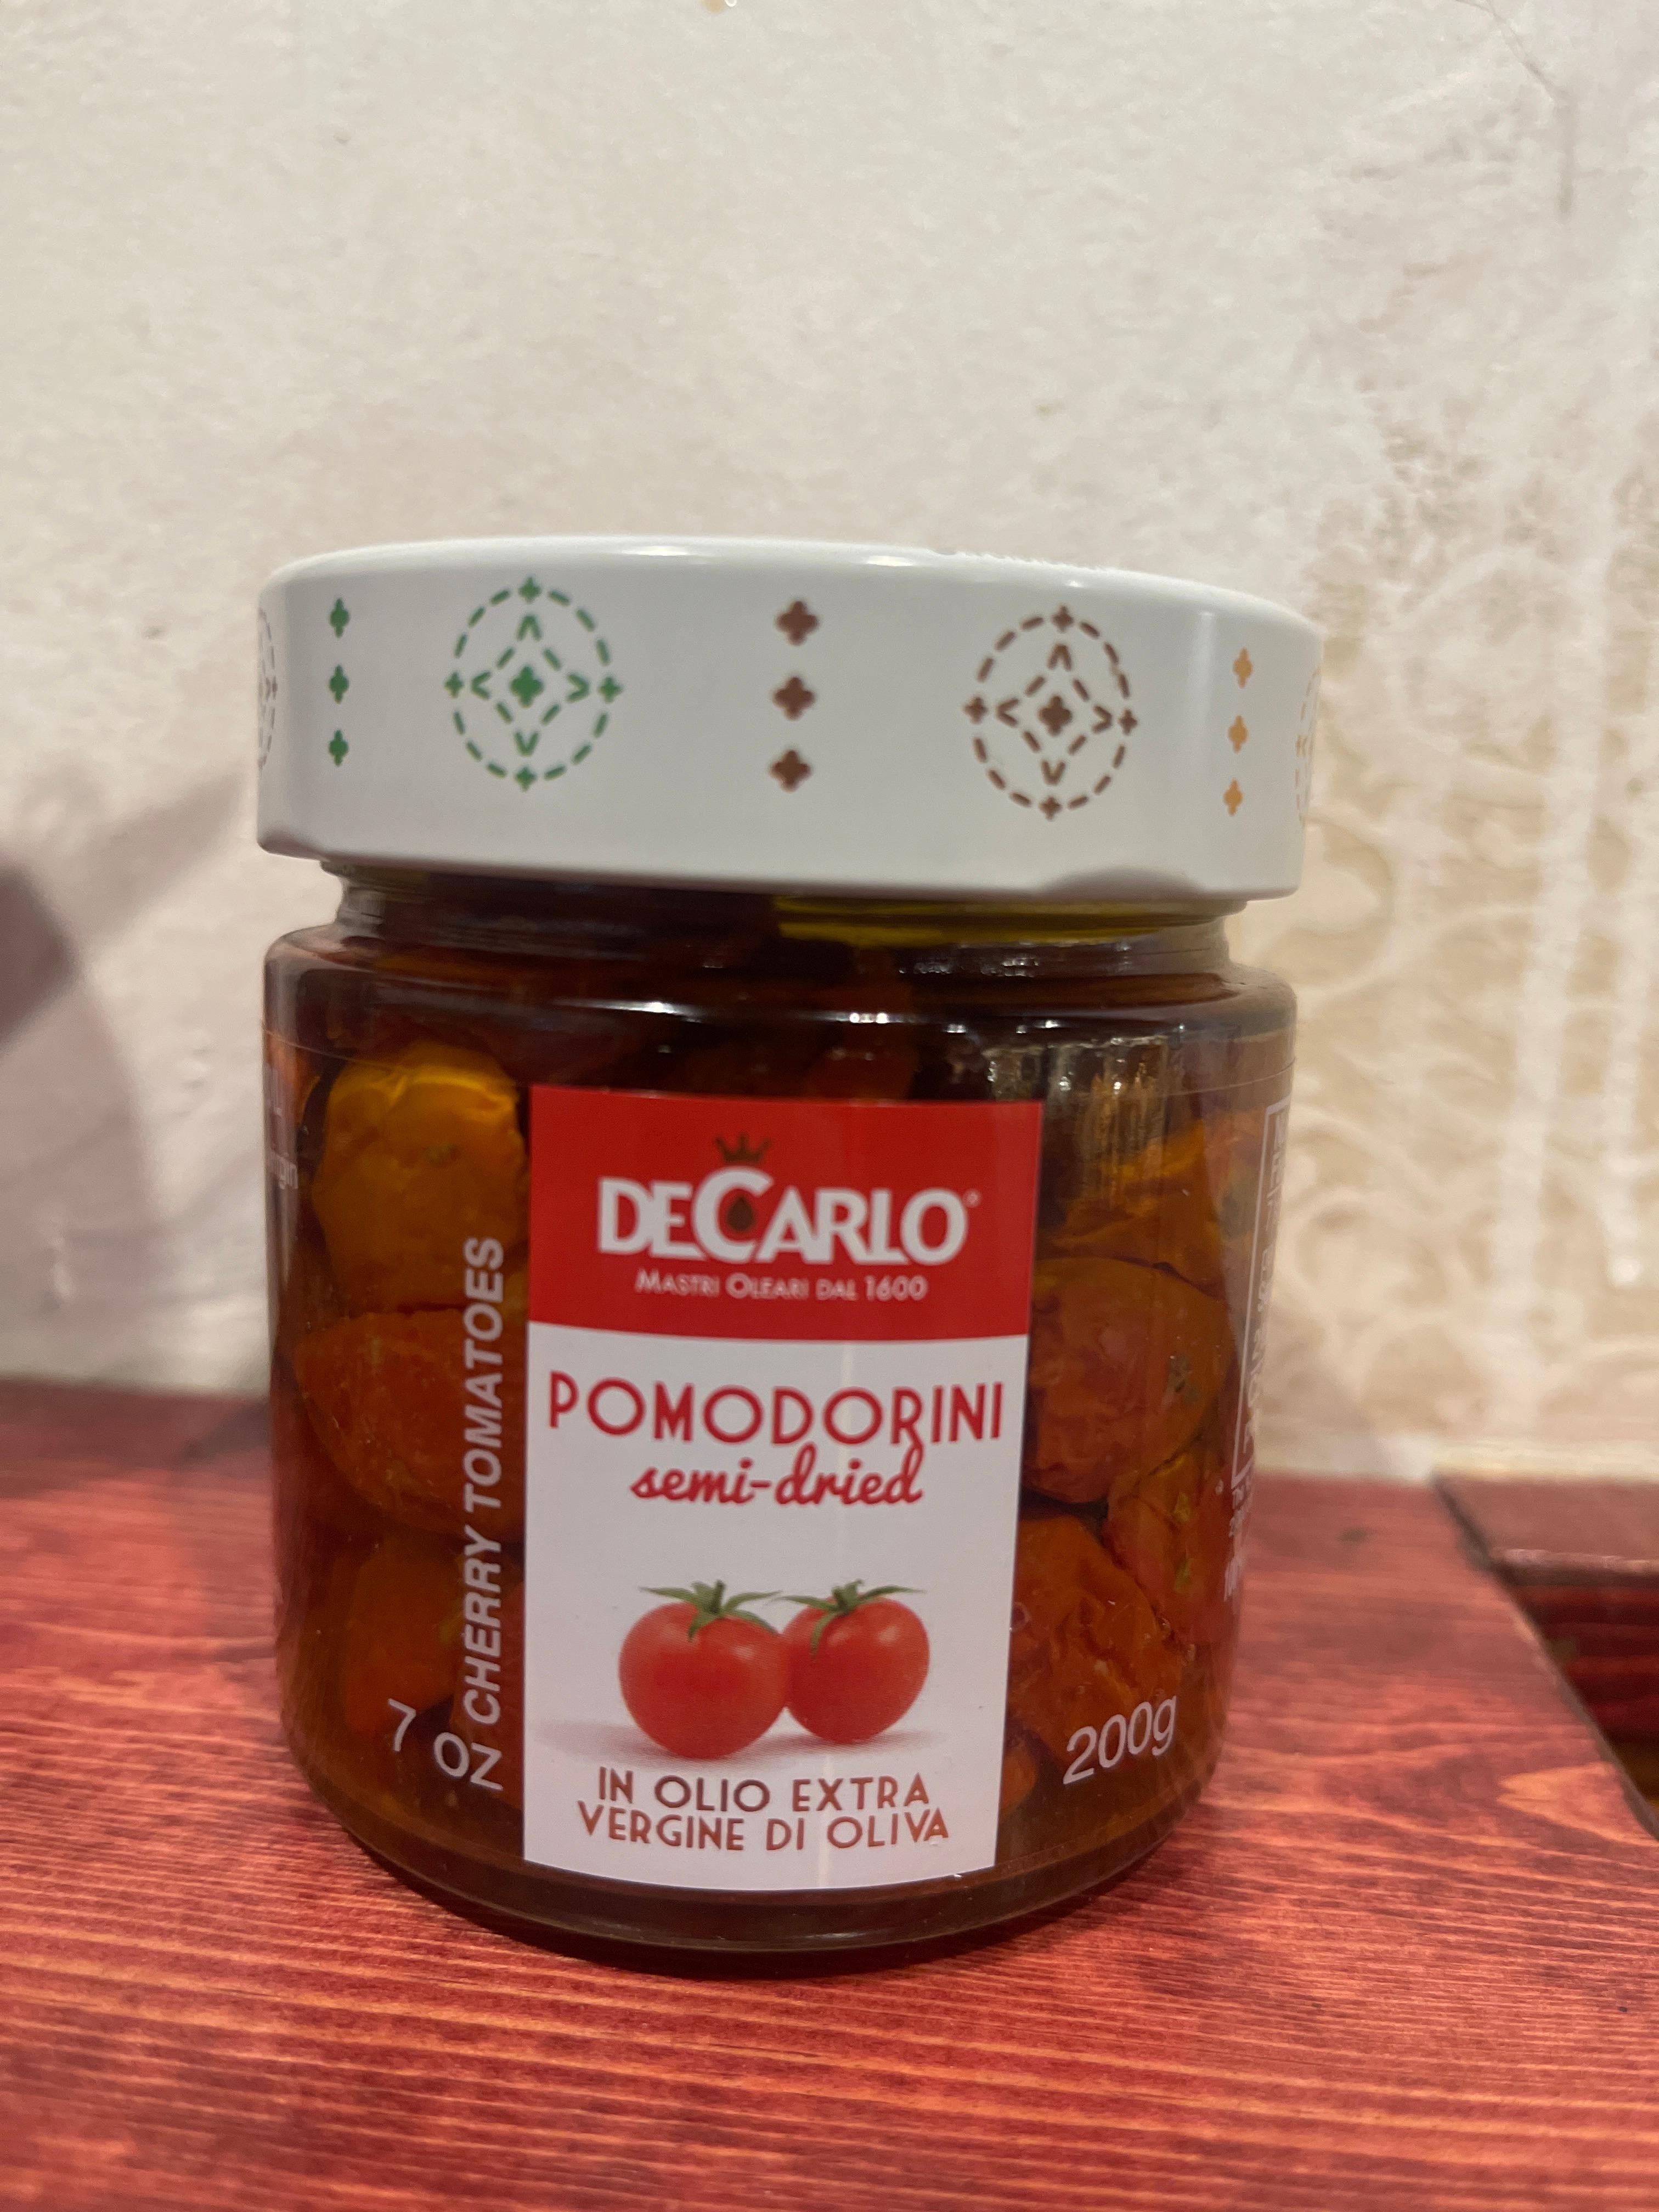 DeCarlo Pomodori semi-dried 200g